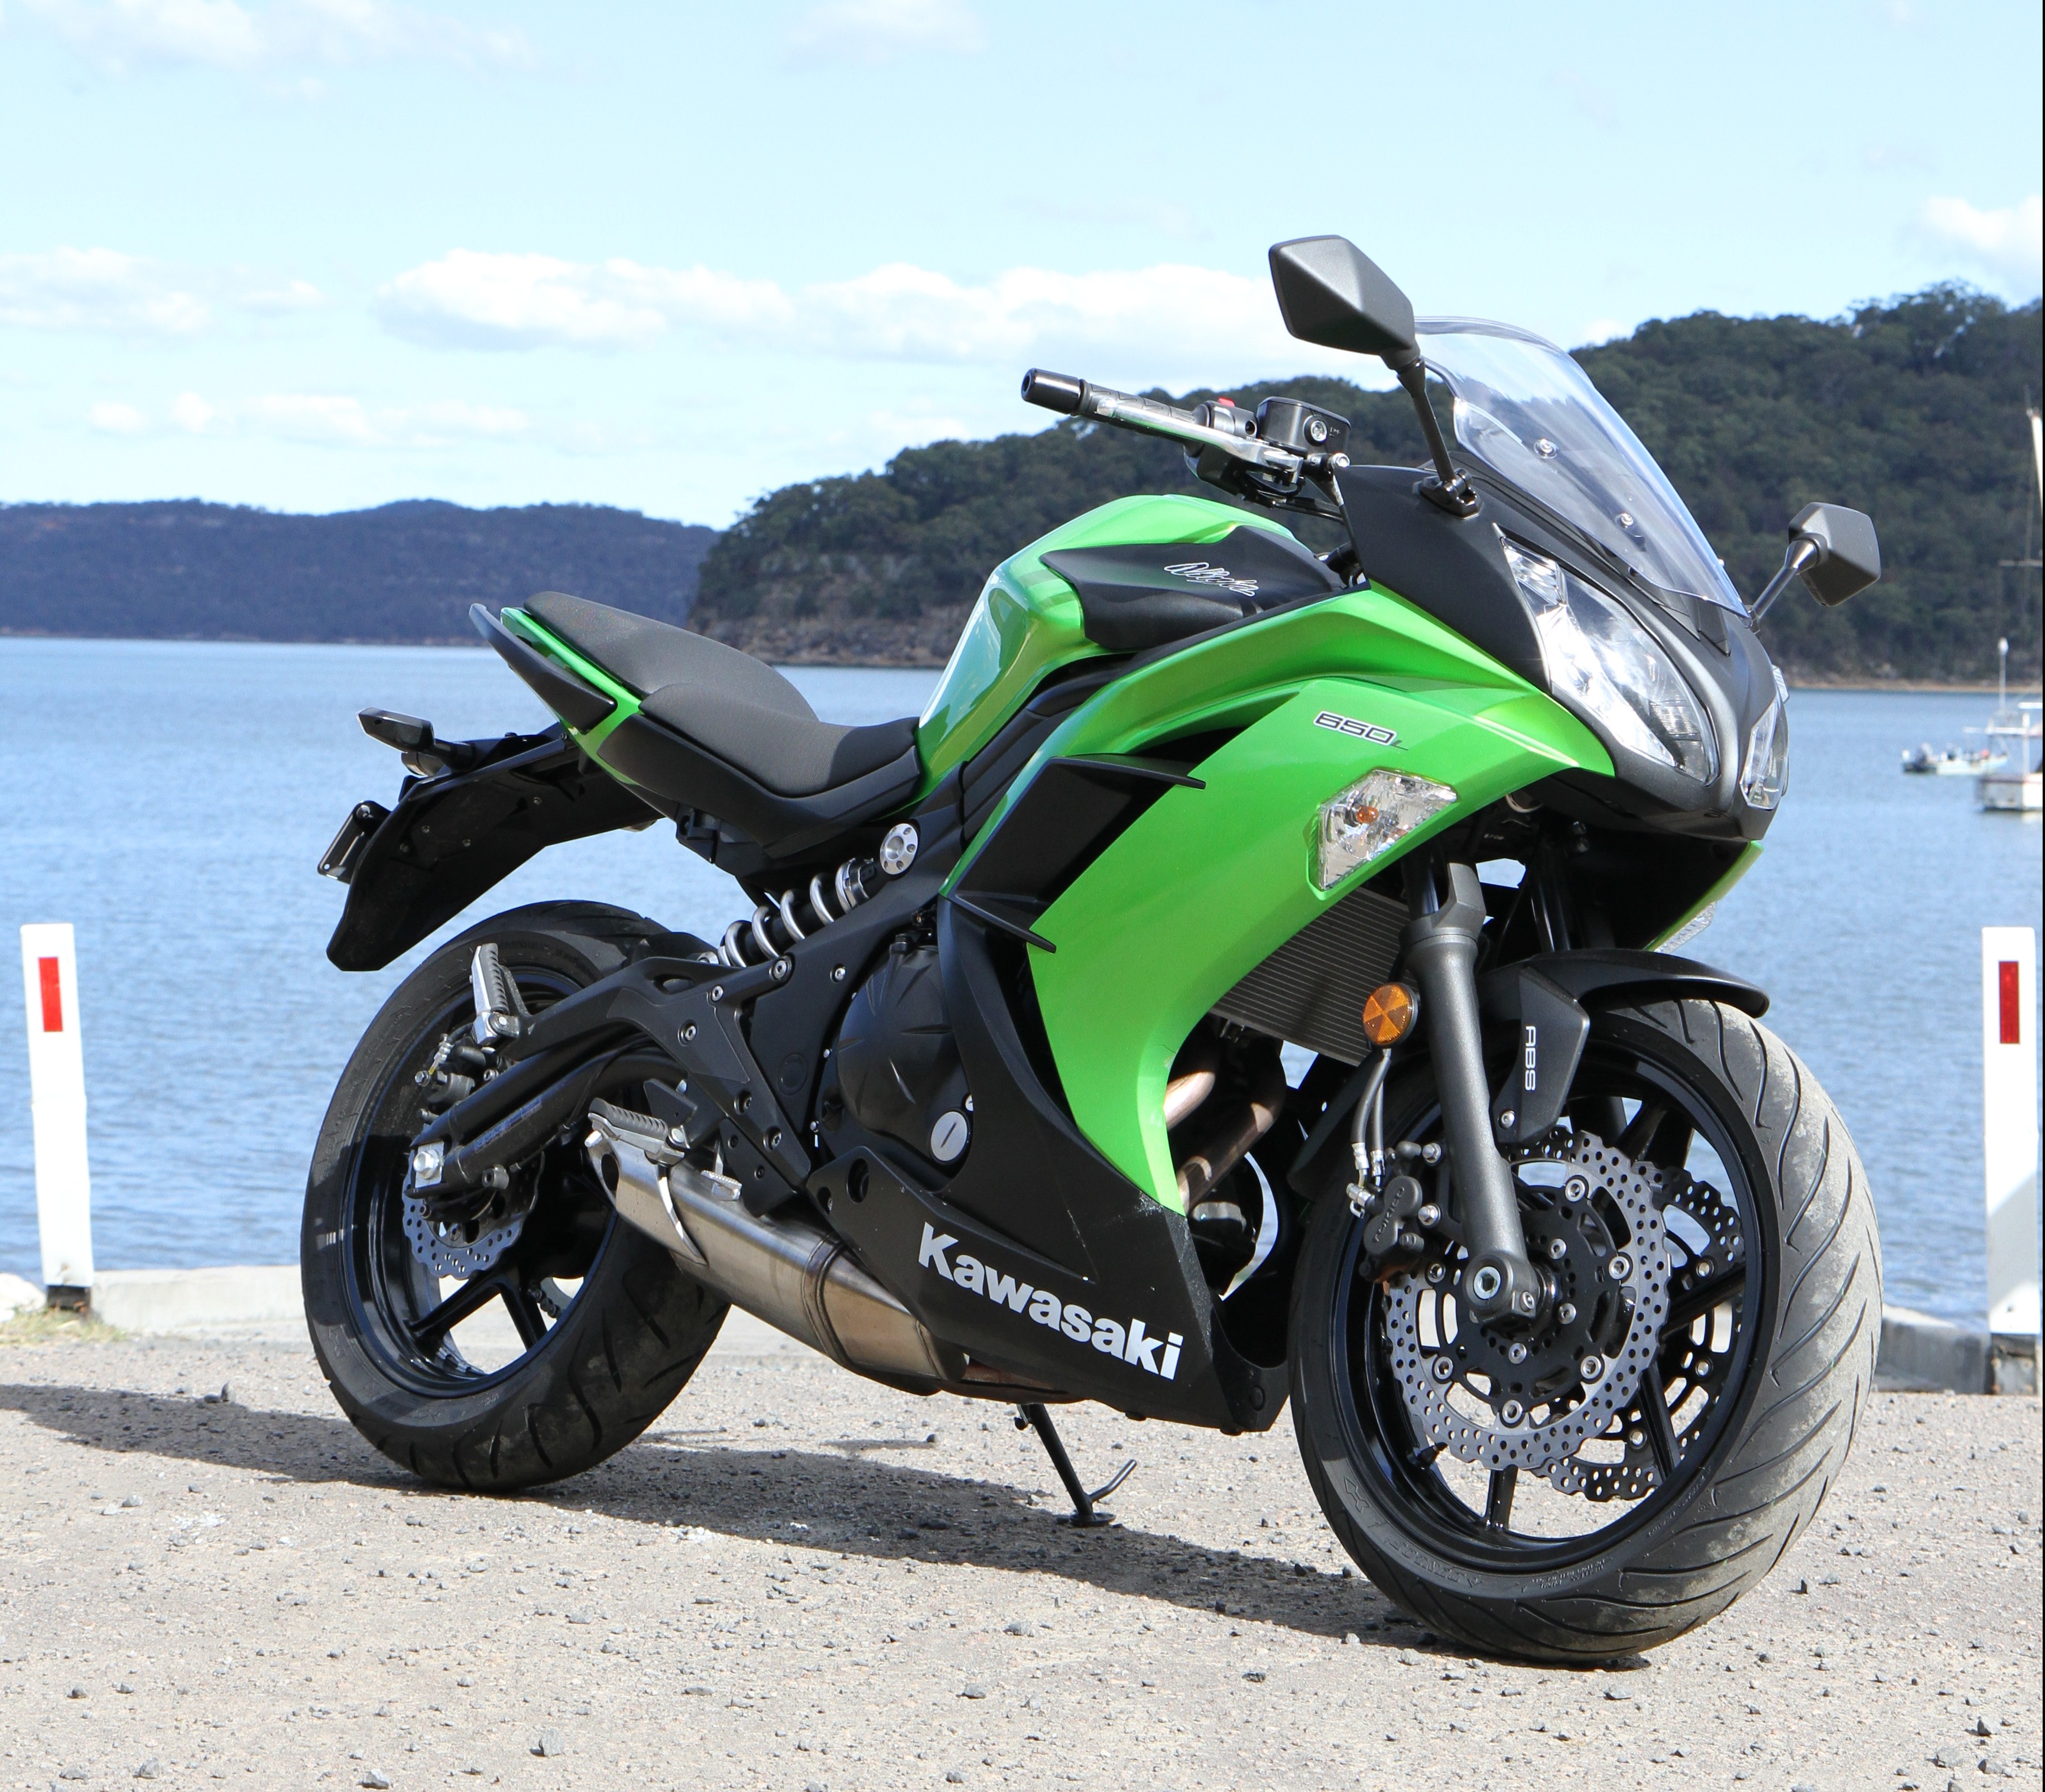 Kawasaki Z650 review: This sporty, naked daily ride merits 